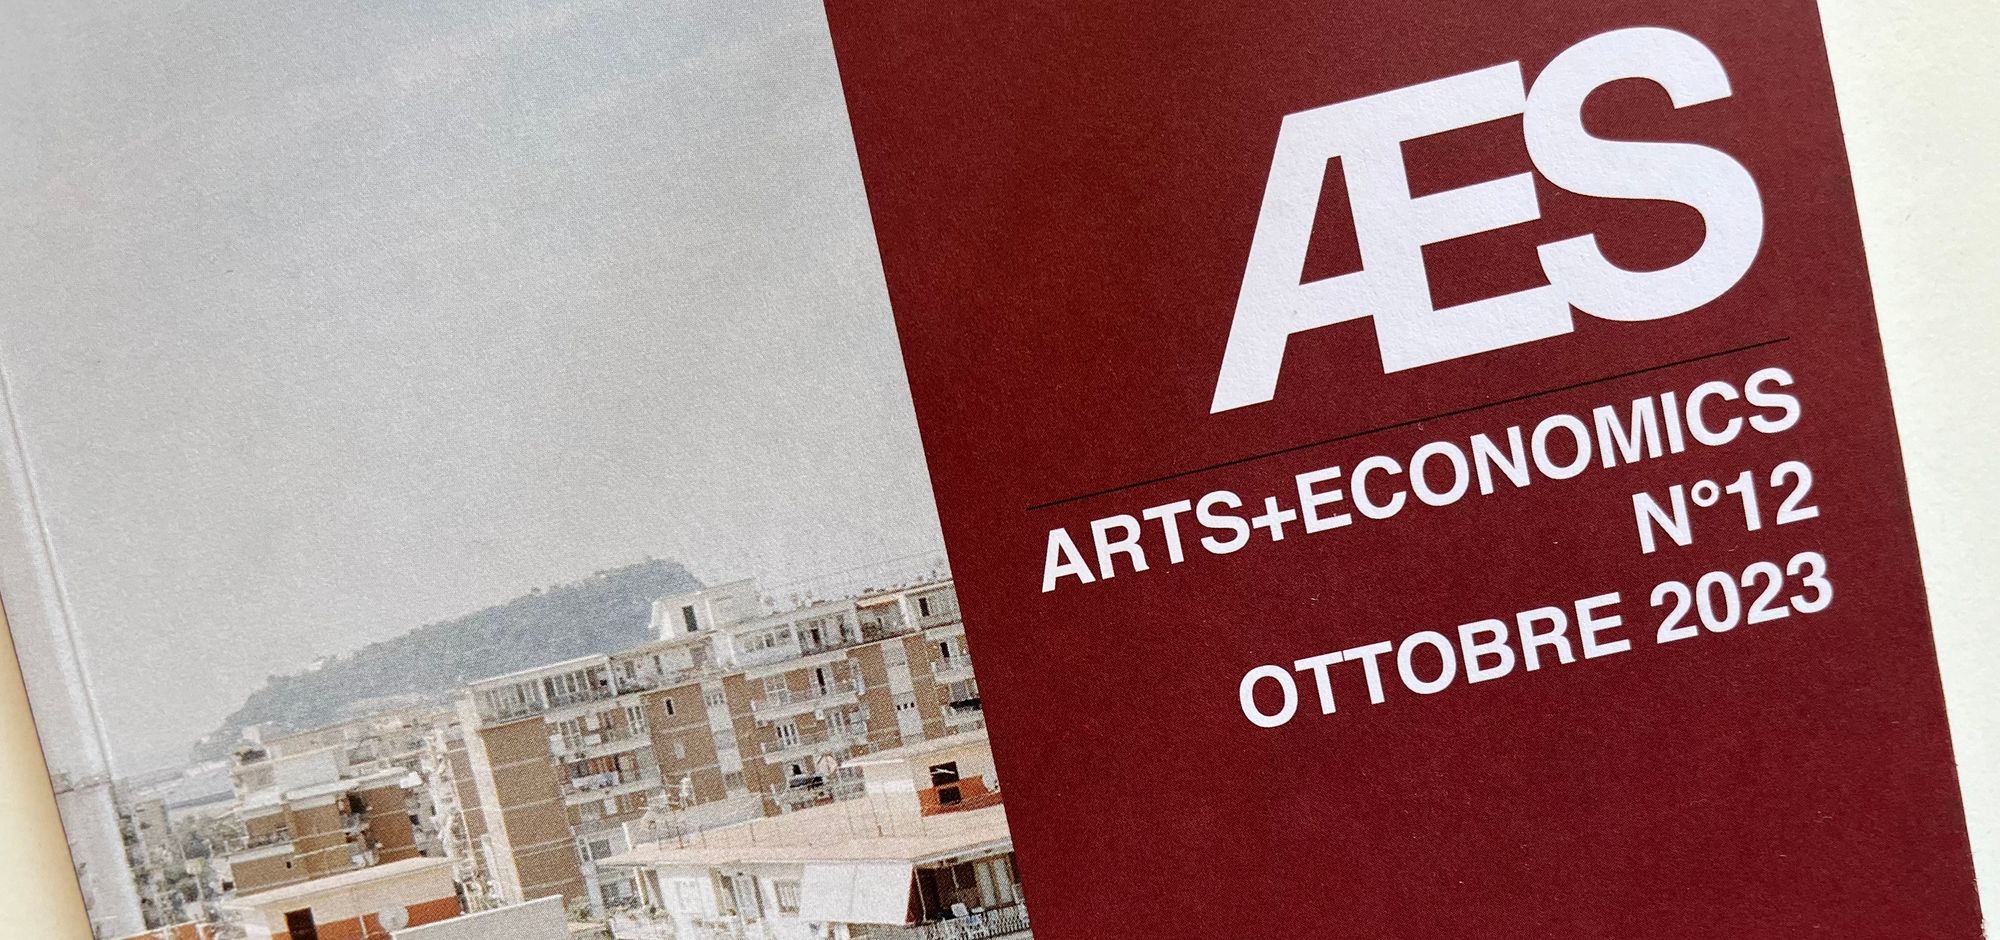 ARTS+ECONOMICS N°12 OTTOBRE 2023